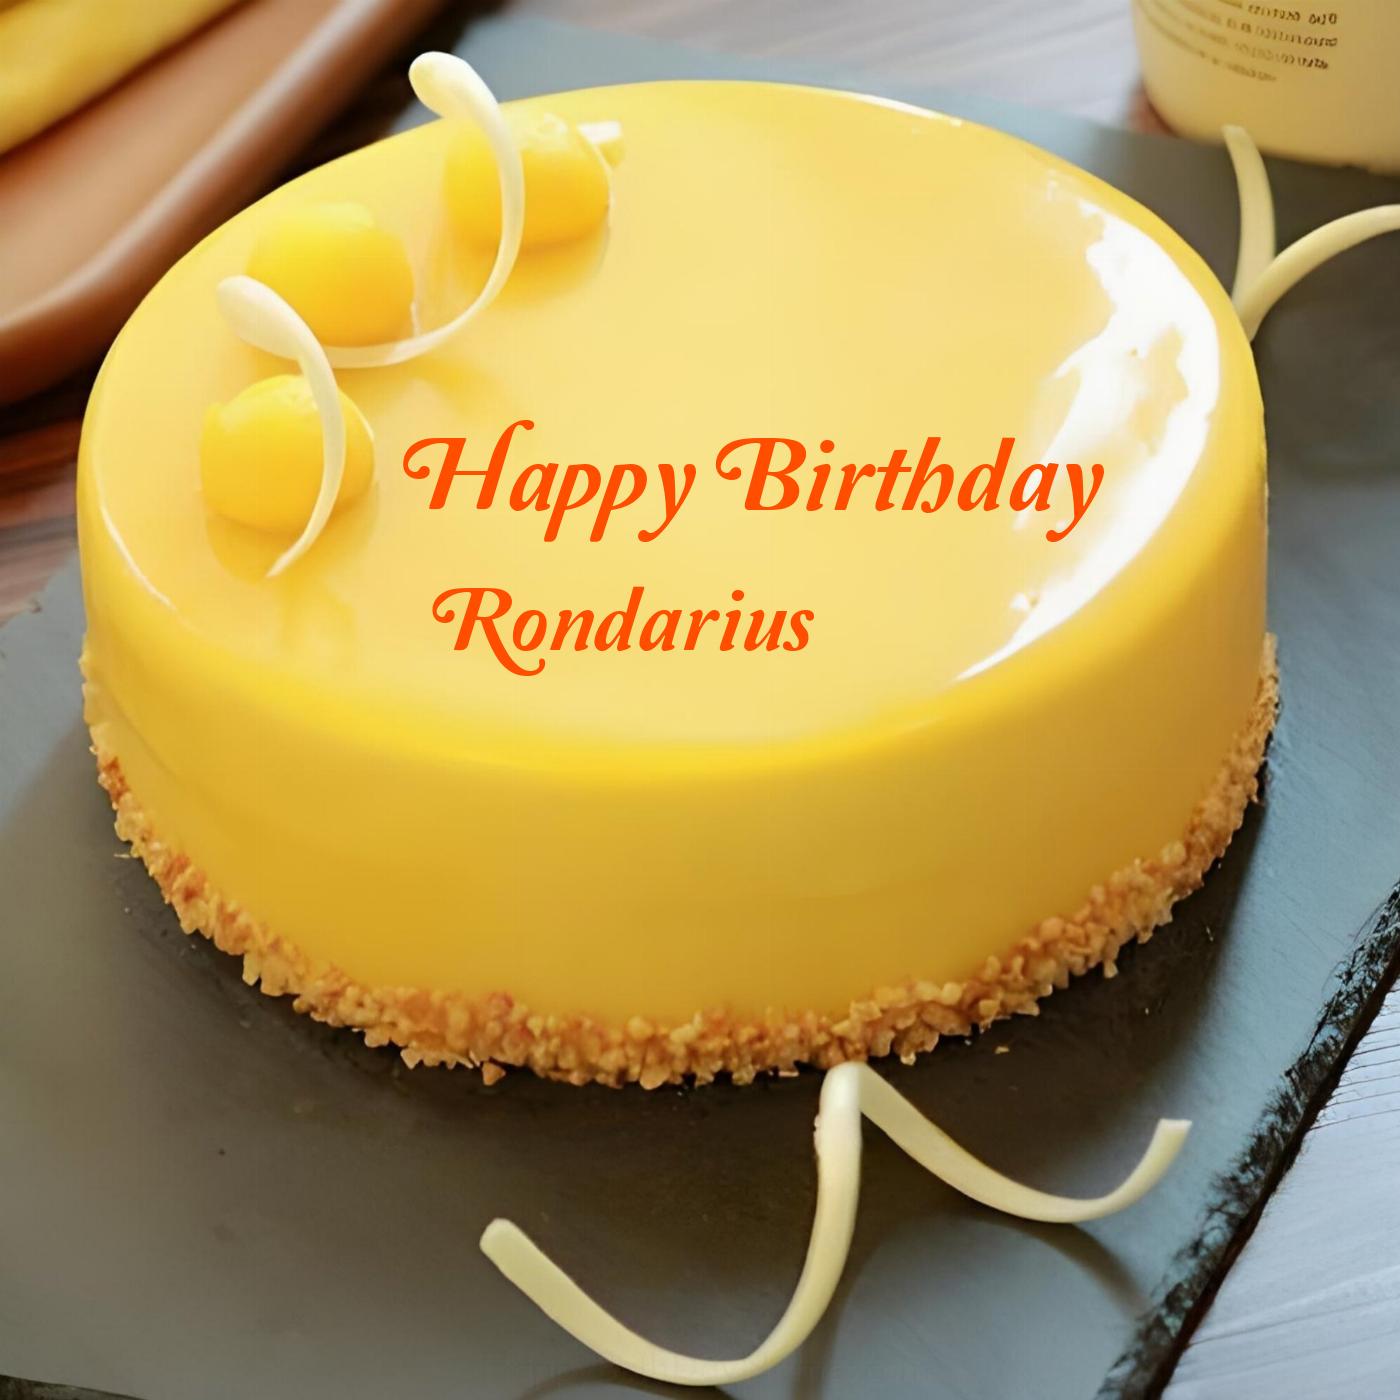 Happy Birthday Rondarius Beautiful Yellow Cake